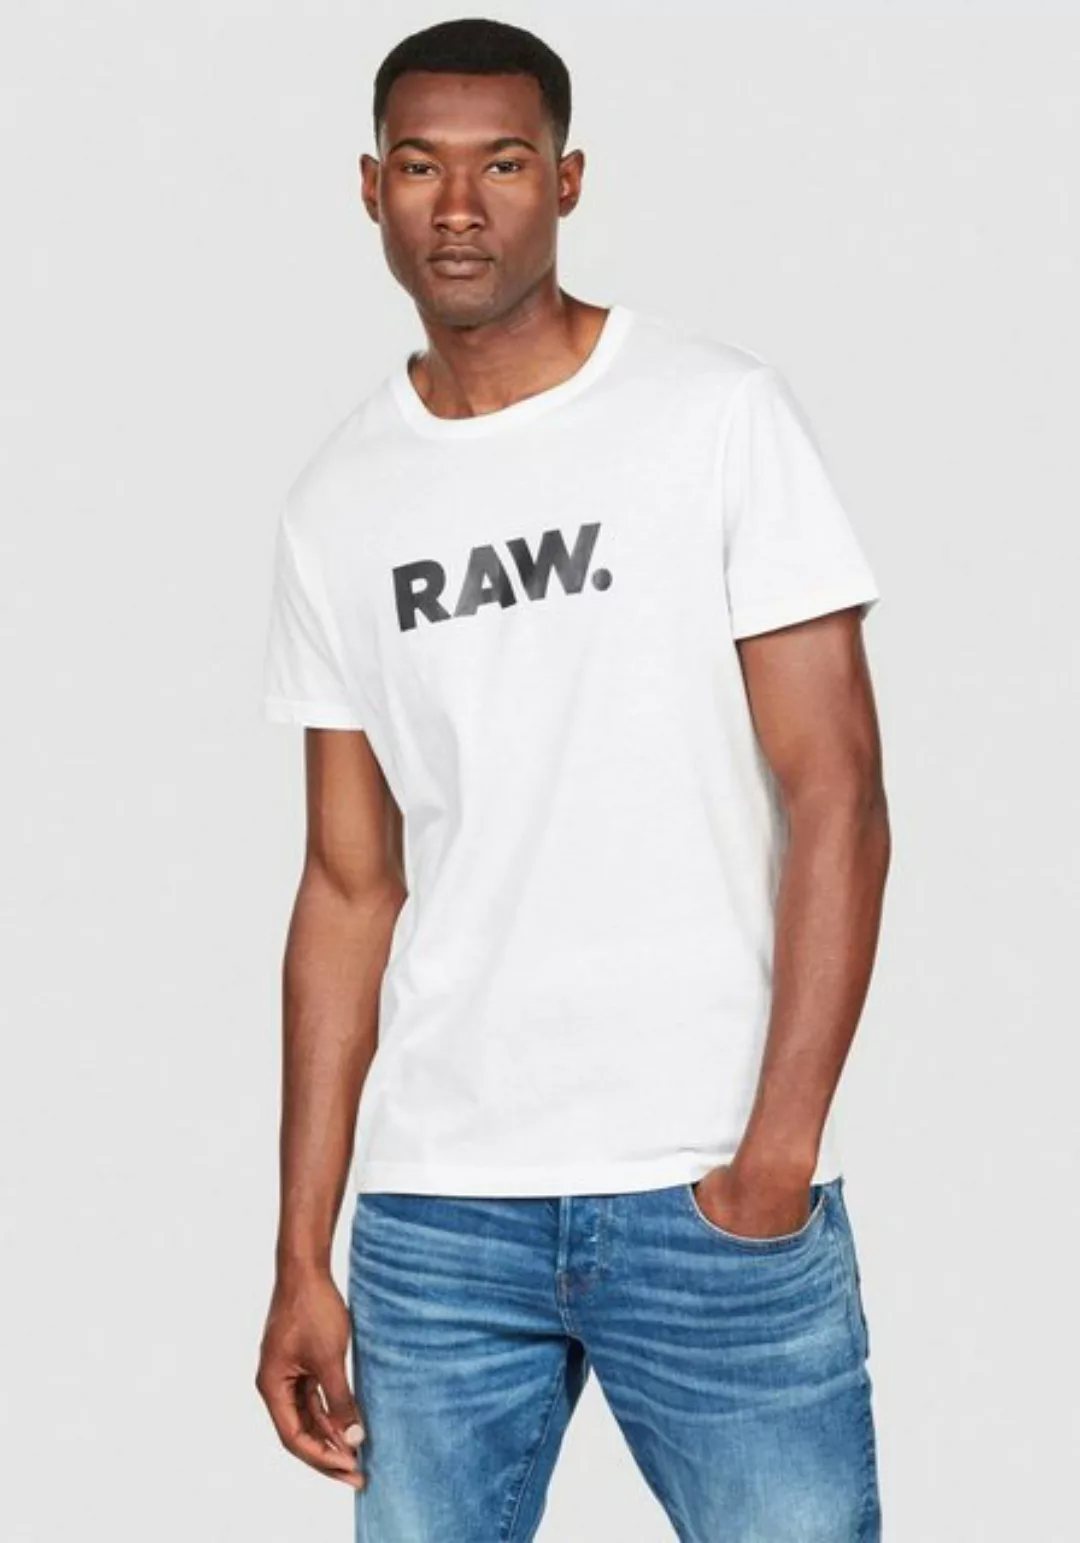 G-star Holorn Kurzarm T-shirt S White günstig online kaufen